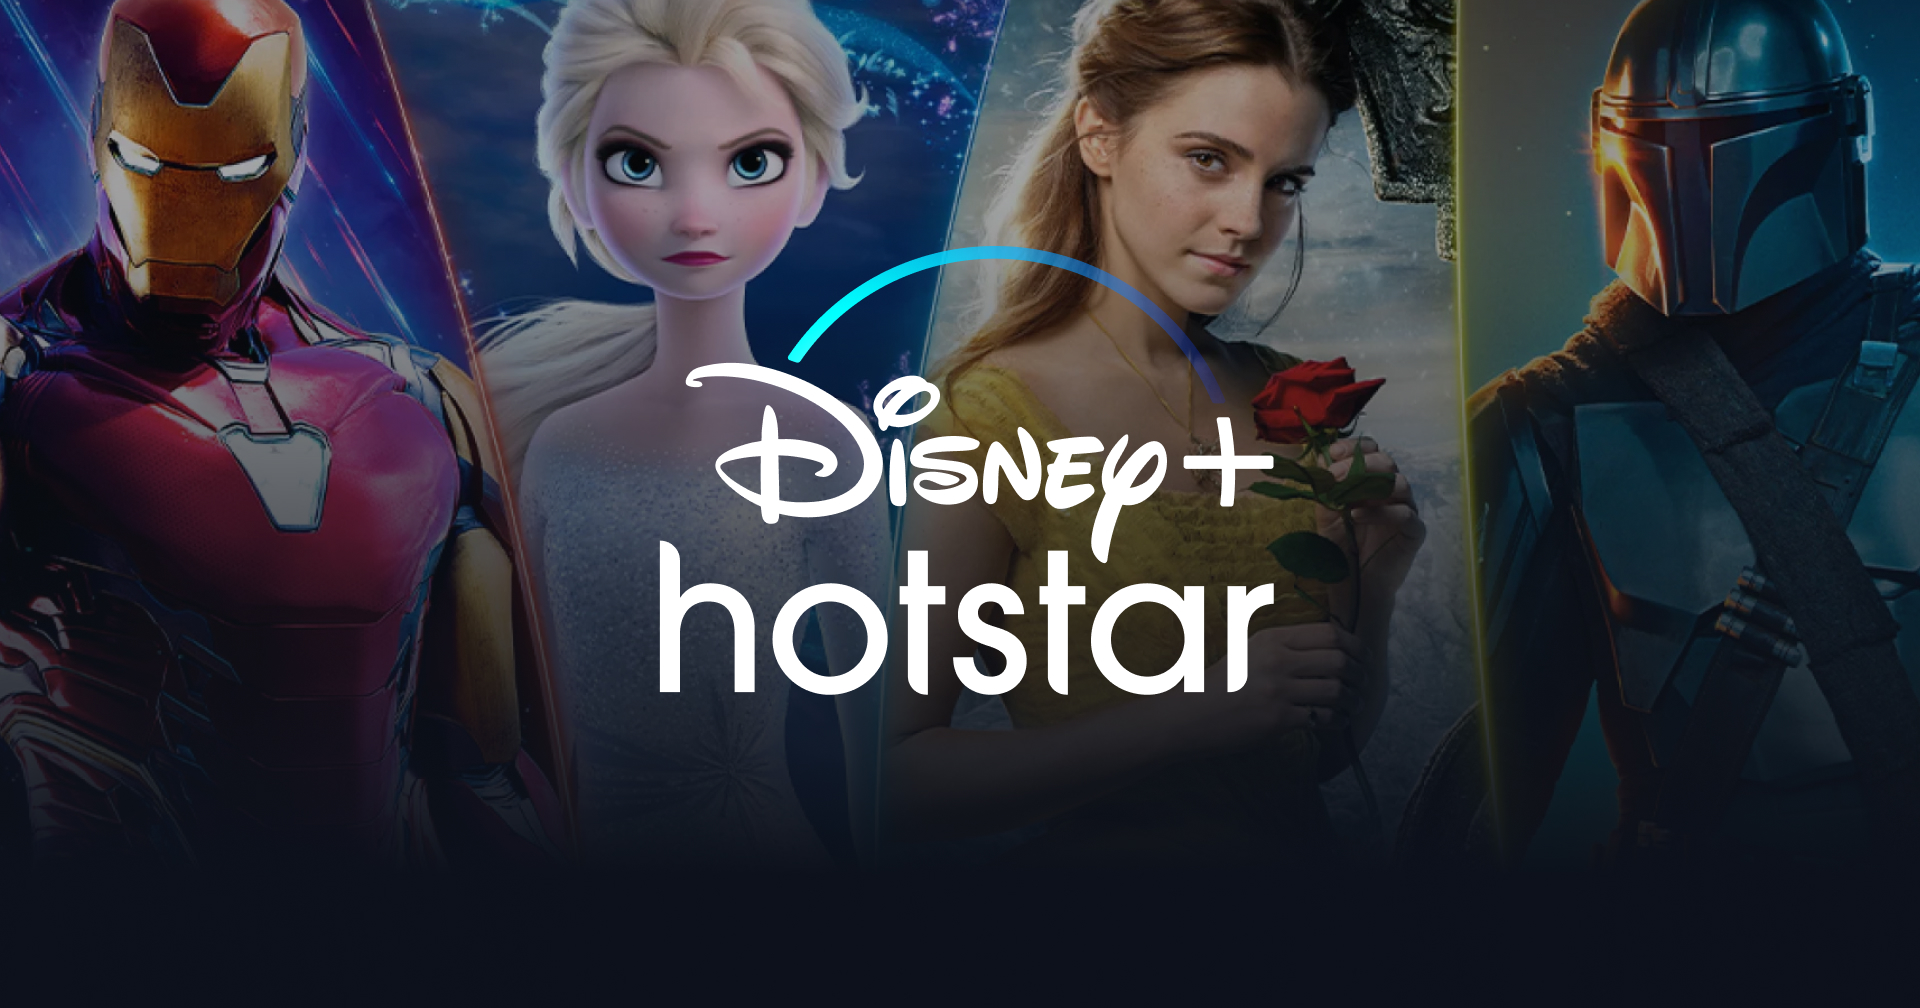 ตีแผ่ร้านหาร!?! สมัคร Disney+ Hotstar เอง ไม่ต้องหารให้เปลืองเงิน